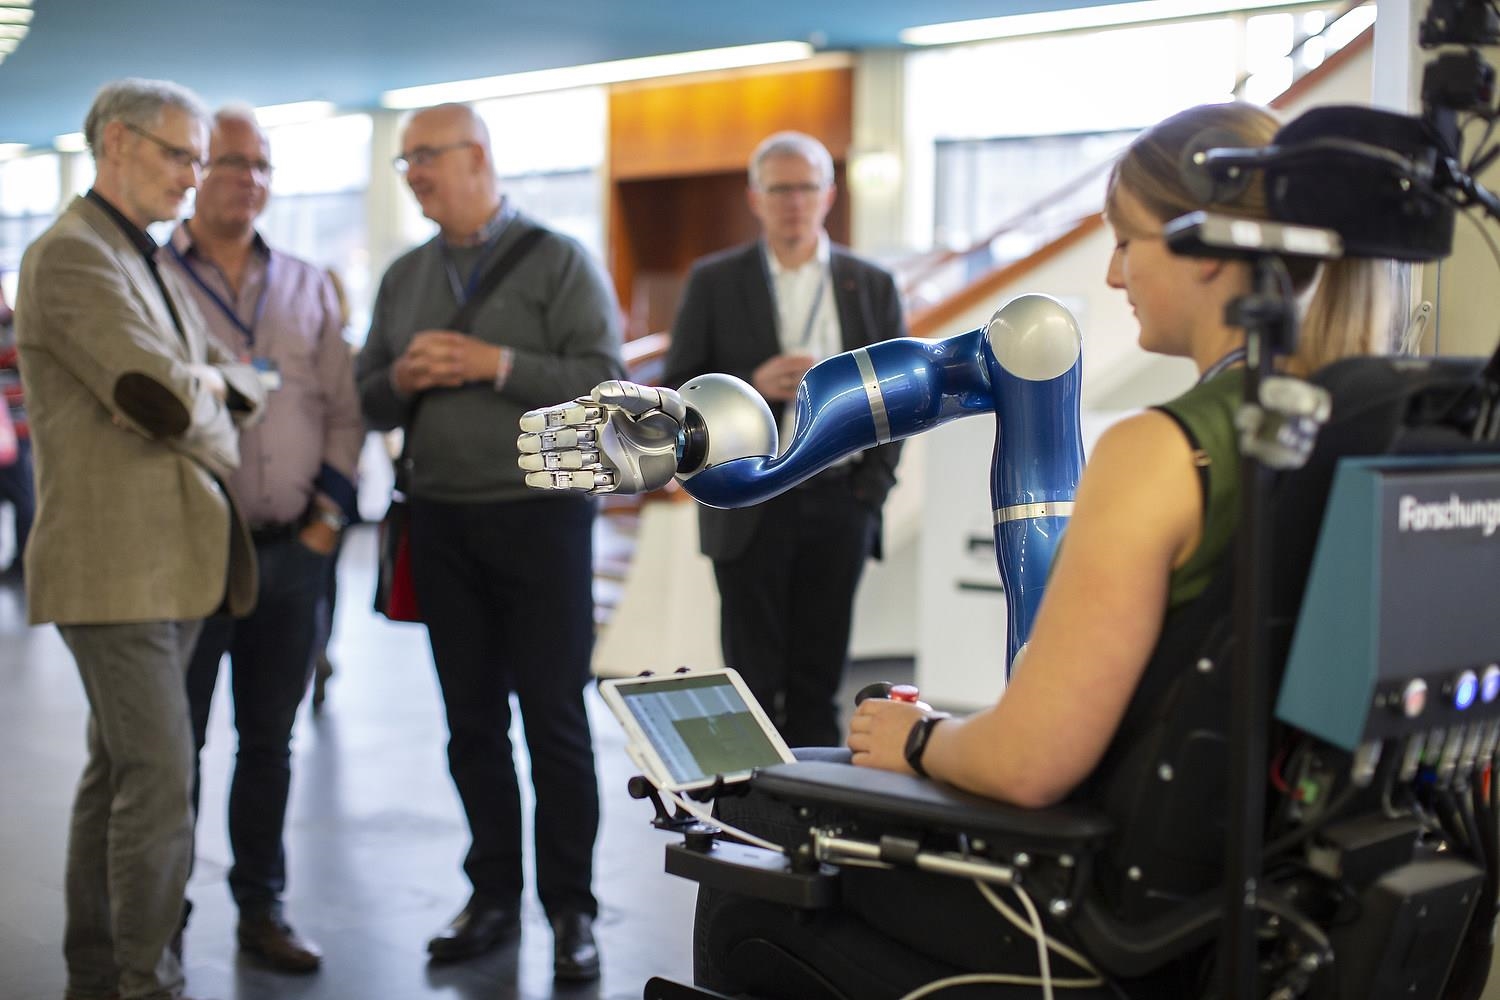 Frau testet vor Zuschauern einen Roboterarm auf dem Caritaskongress 2019